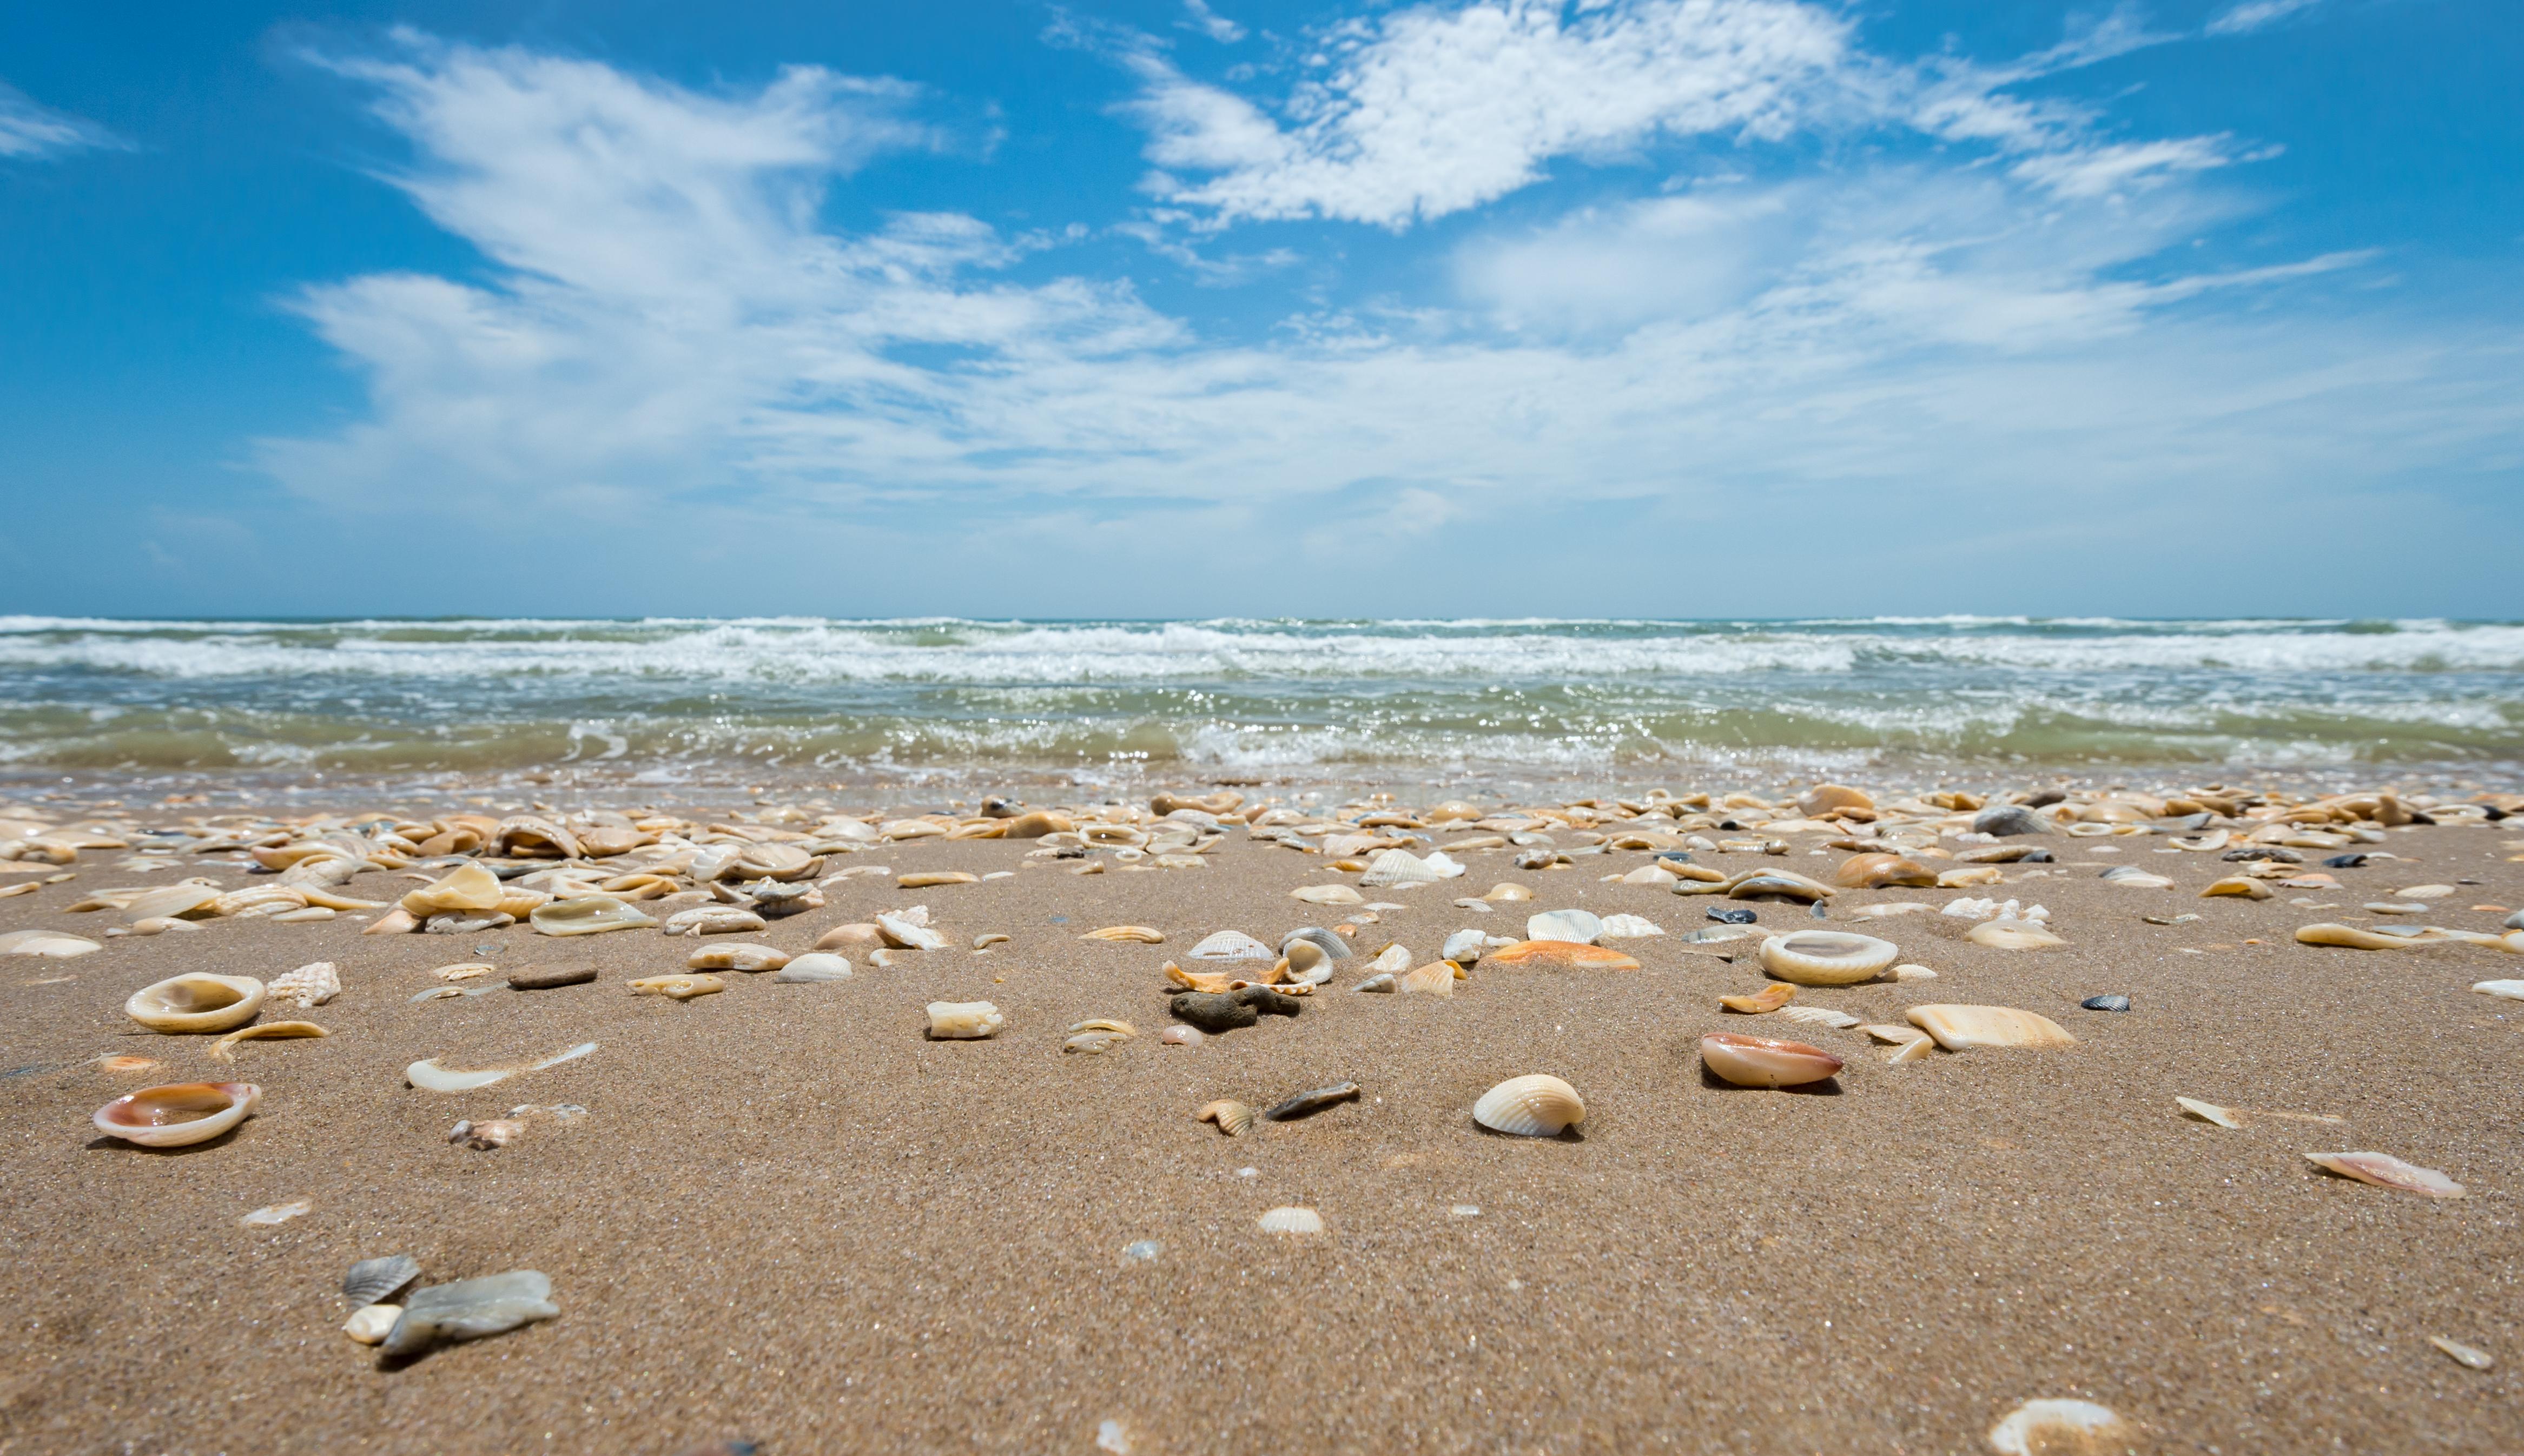 Seashells  Sea shells, Seashells photography, Ocean treasures